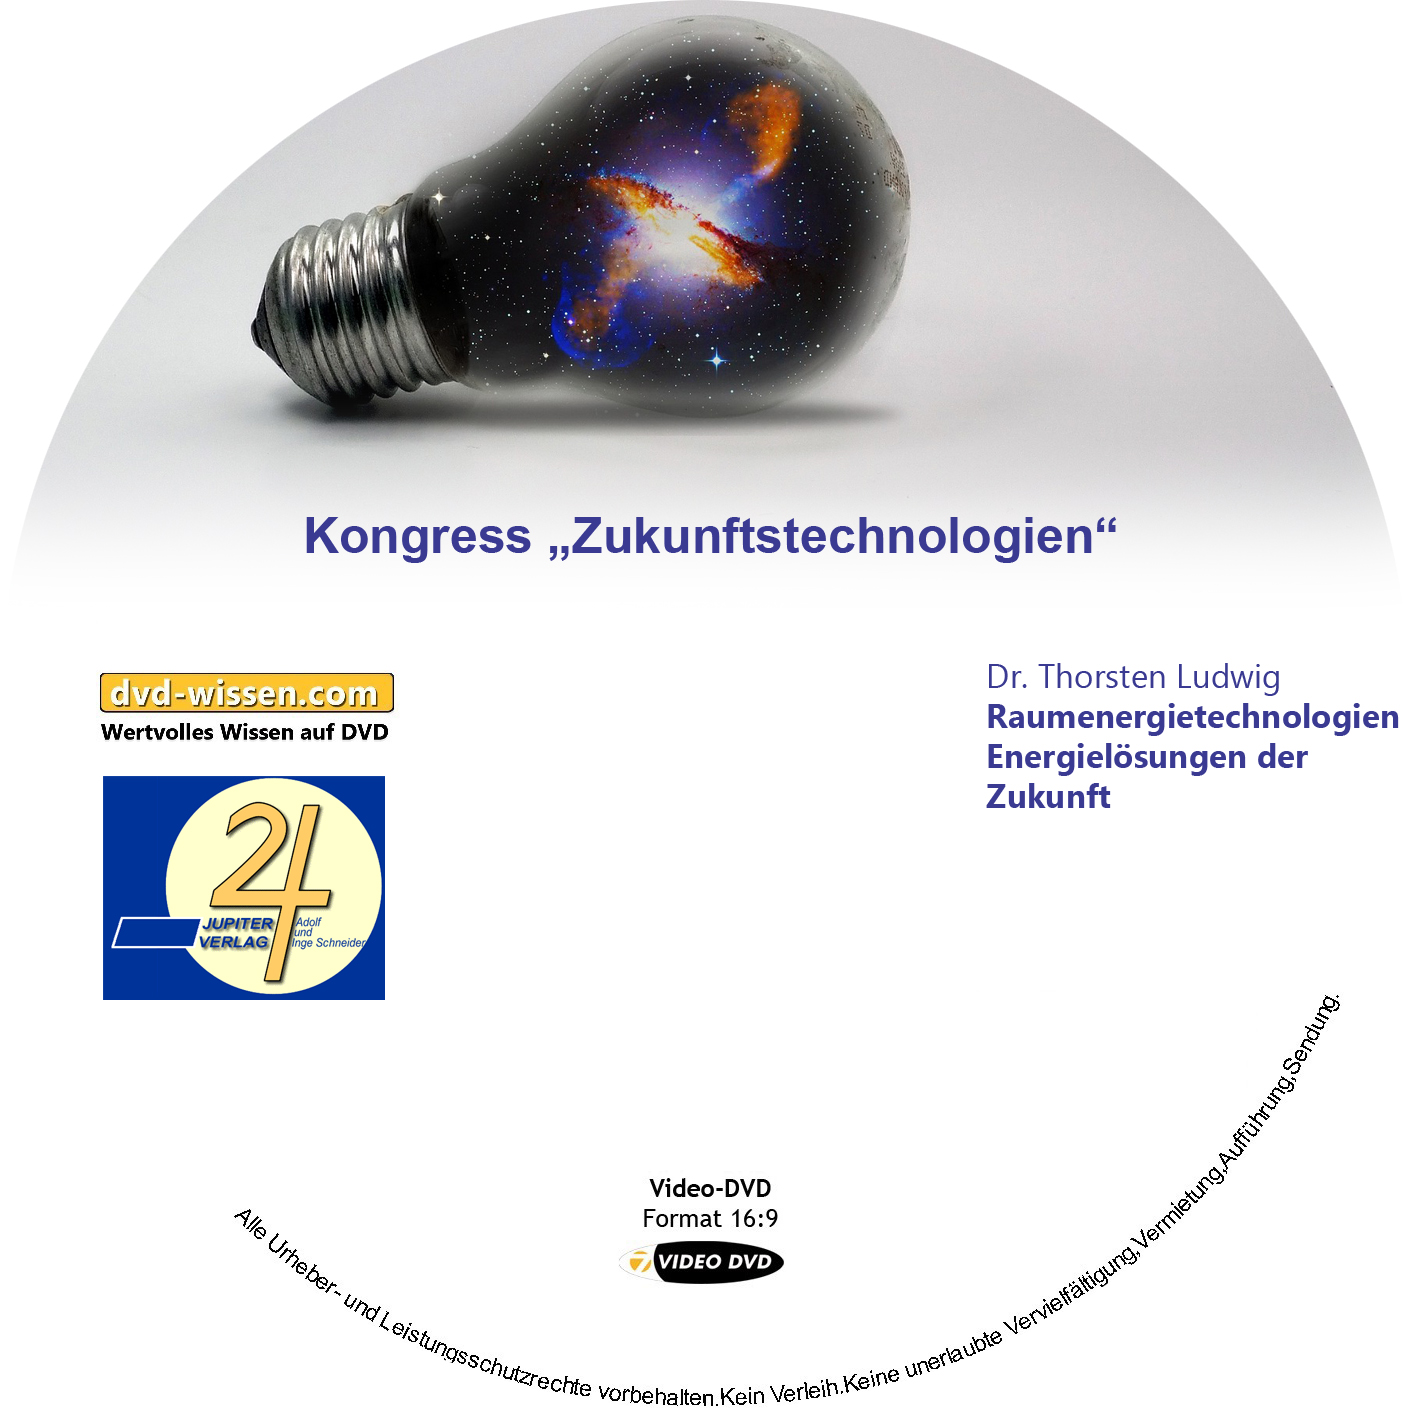 Dr. Thorsten Ludwig: Raumenergietechnologien - Energielösungen der Zukunft